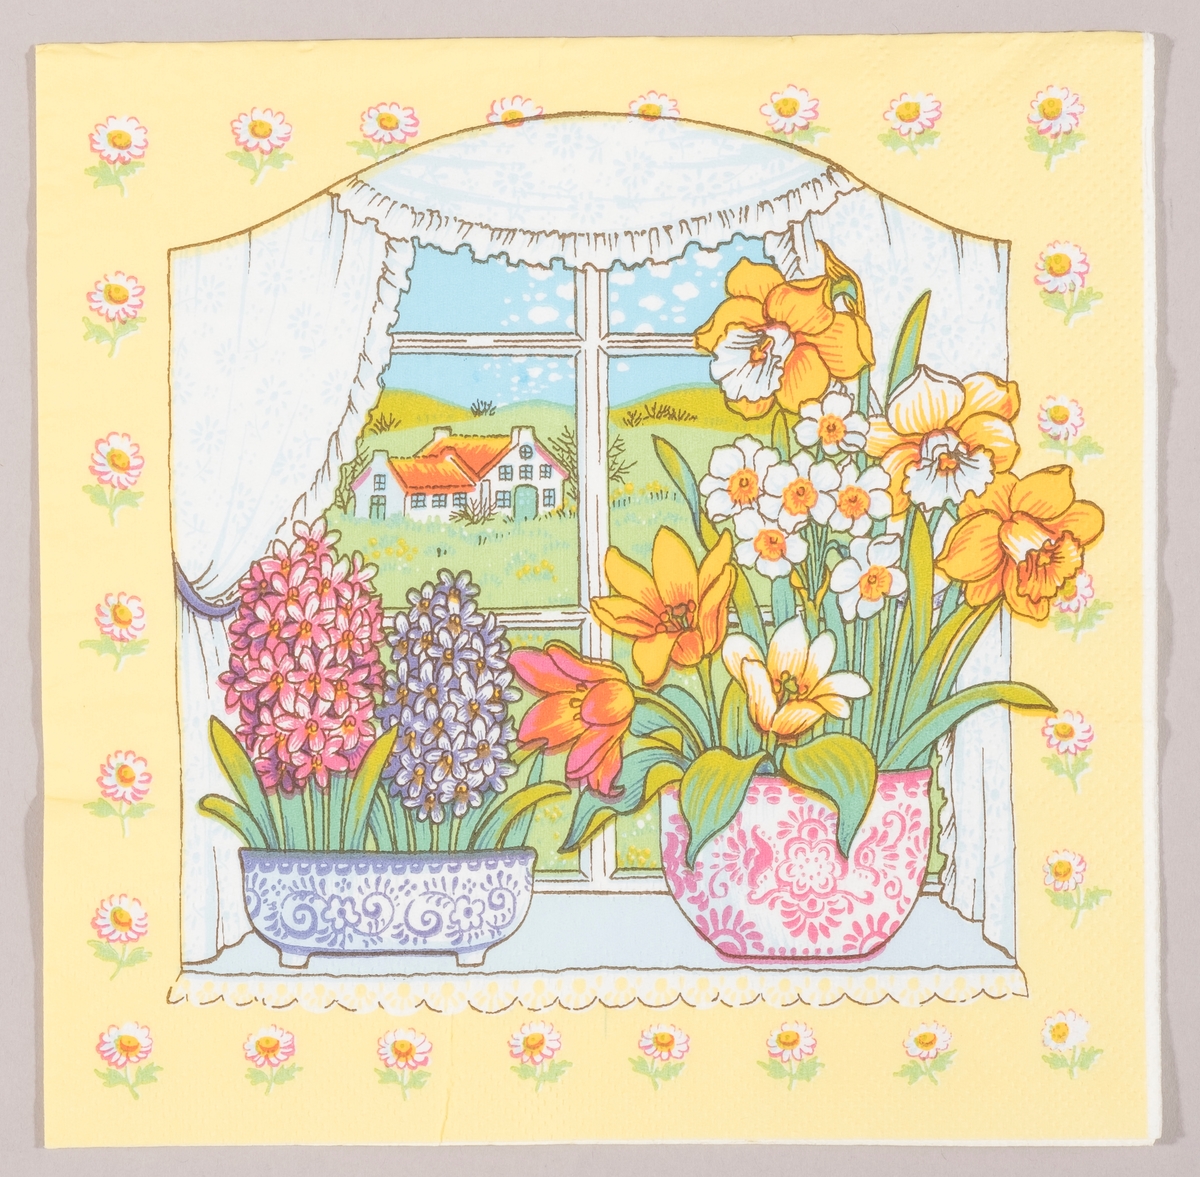 Et vindu med to vaser med blomster. I den ene vasen er det to svibler. I den andre vasen er det påskeliljer, pinseliljer og tulipaner. Vinduet har sprosser og gardiner. Utsikten fra vinduet viser et hvit bondehus omgitt av grønne åkre. hvite blomster rundt om motivet.